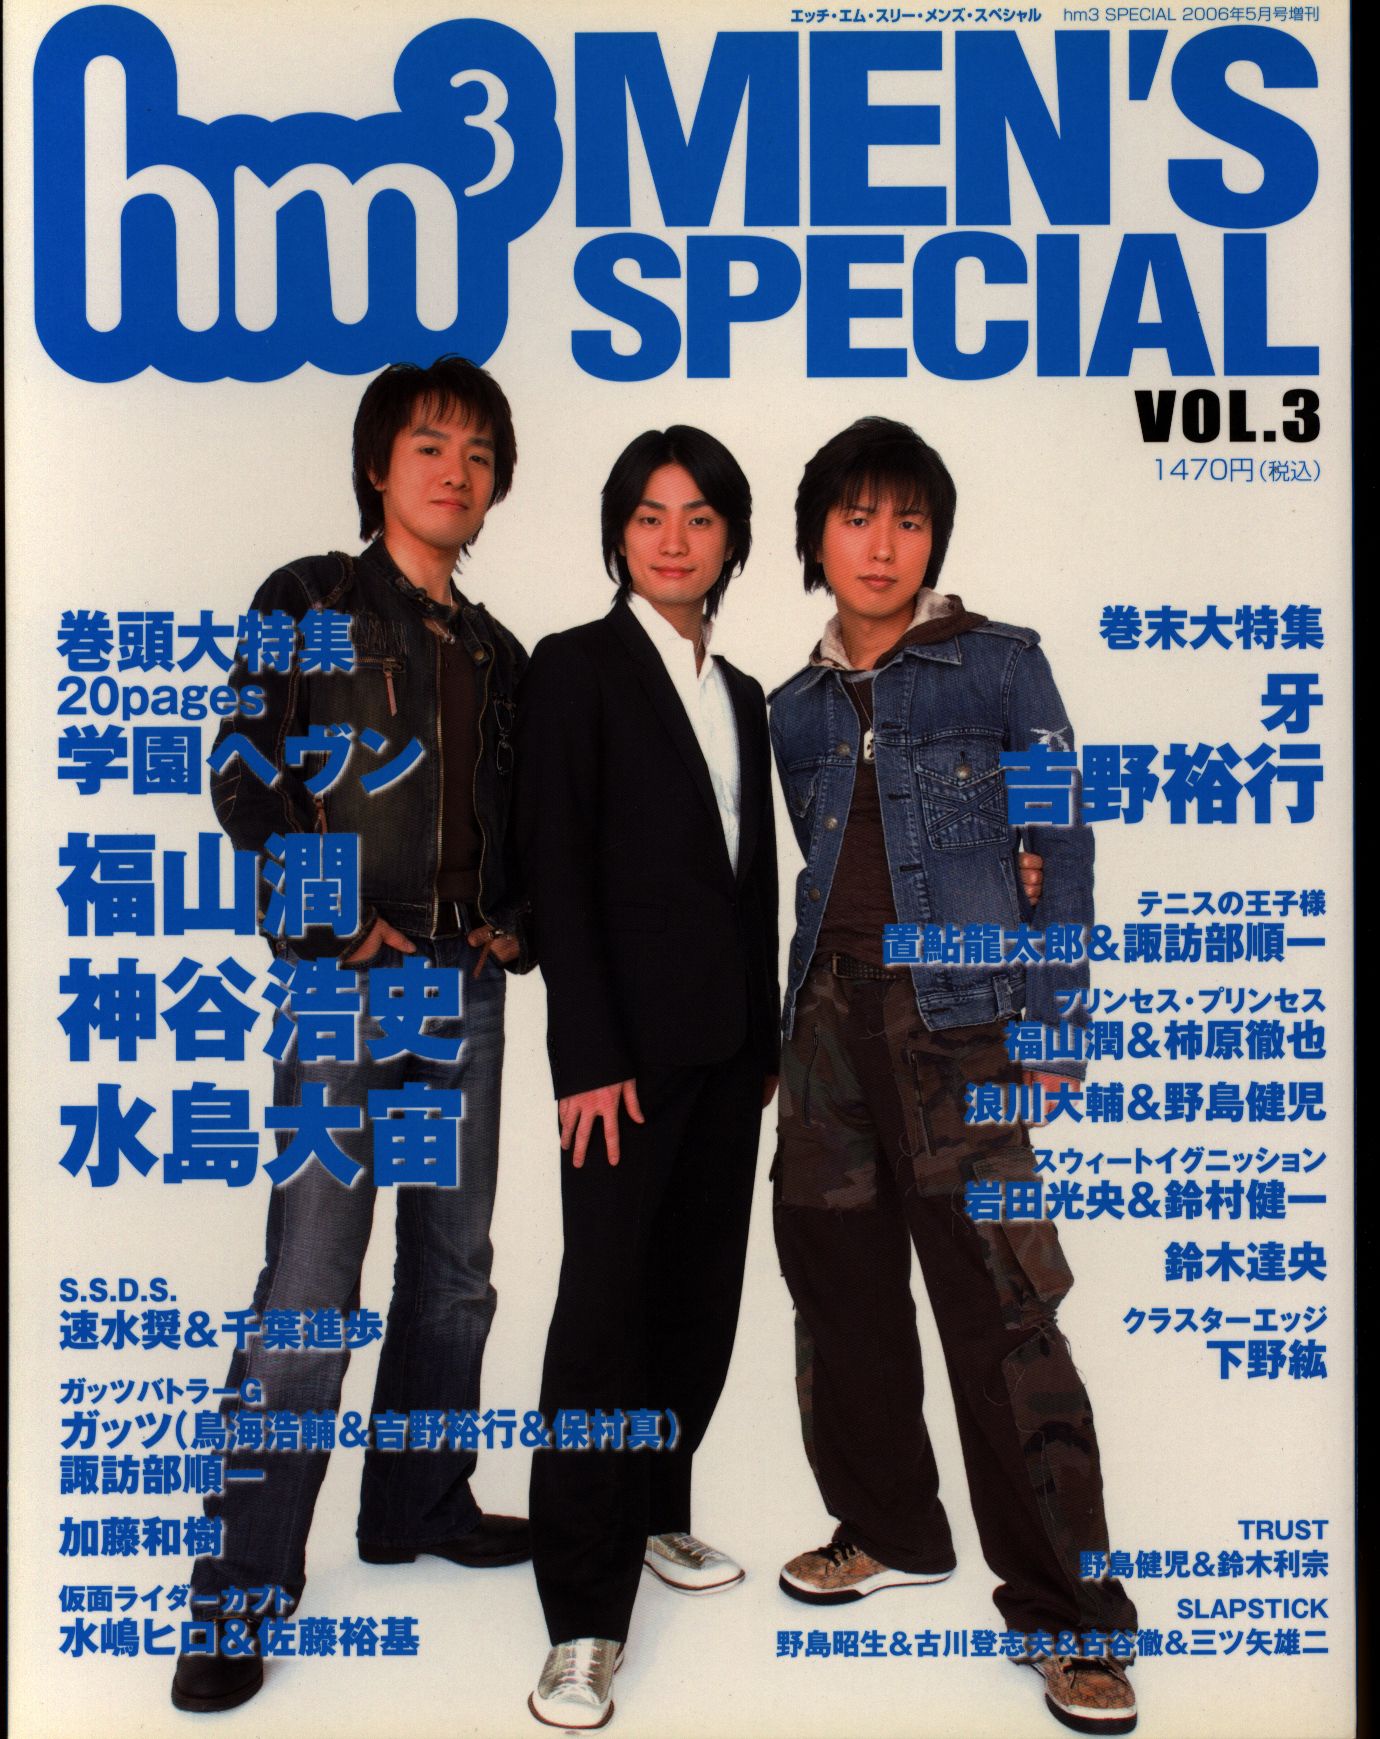 声優雑誌 hm3 vol.3 2006年5月増刊号 Chuumoku no - アート/エンタメ 